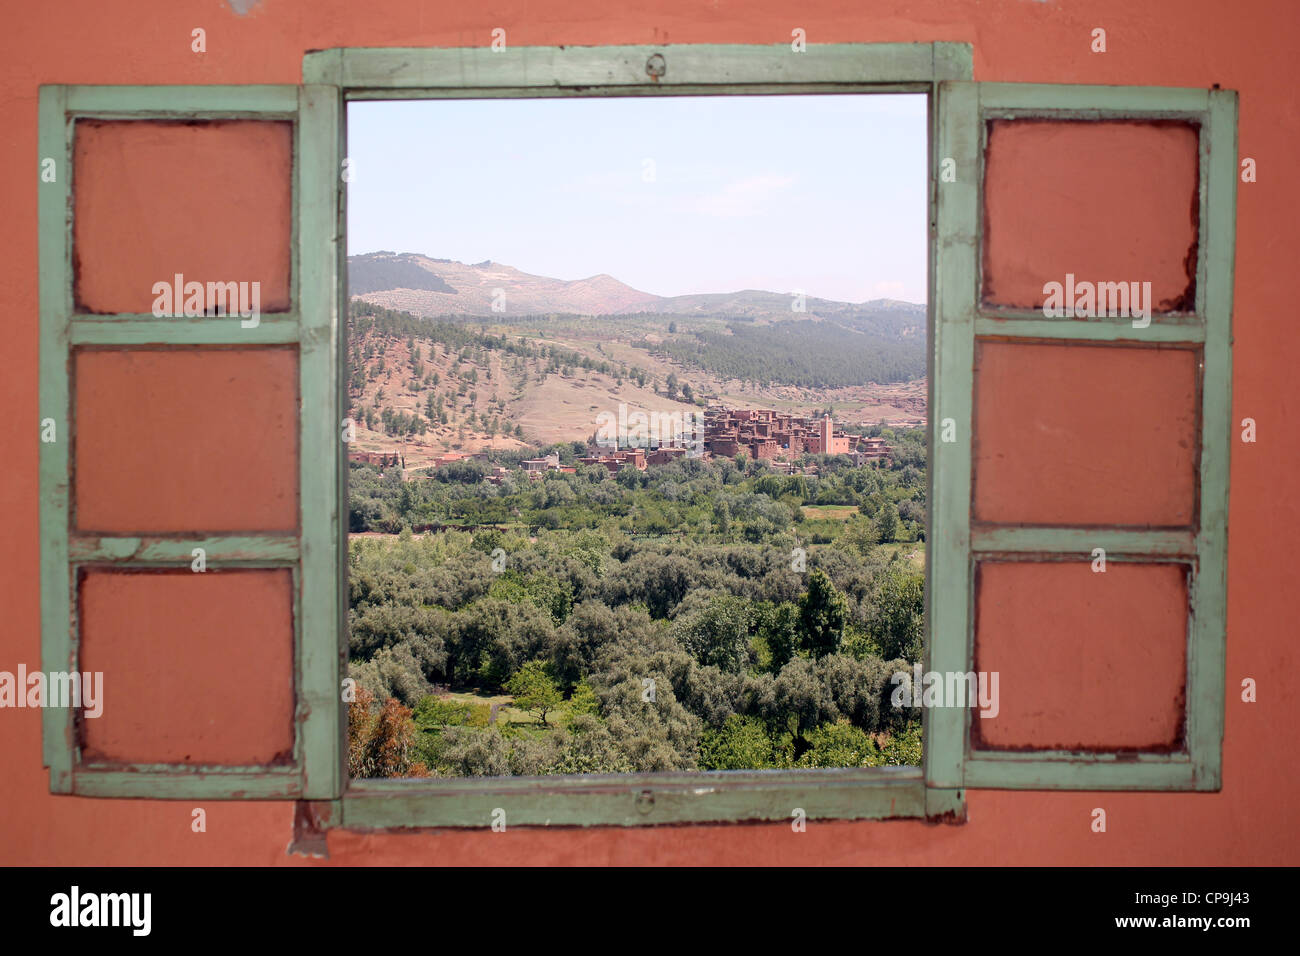 Maison berbère vue depuis la fenêtre Maroc Banque D'Images